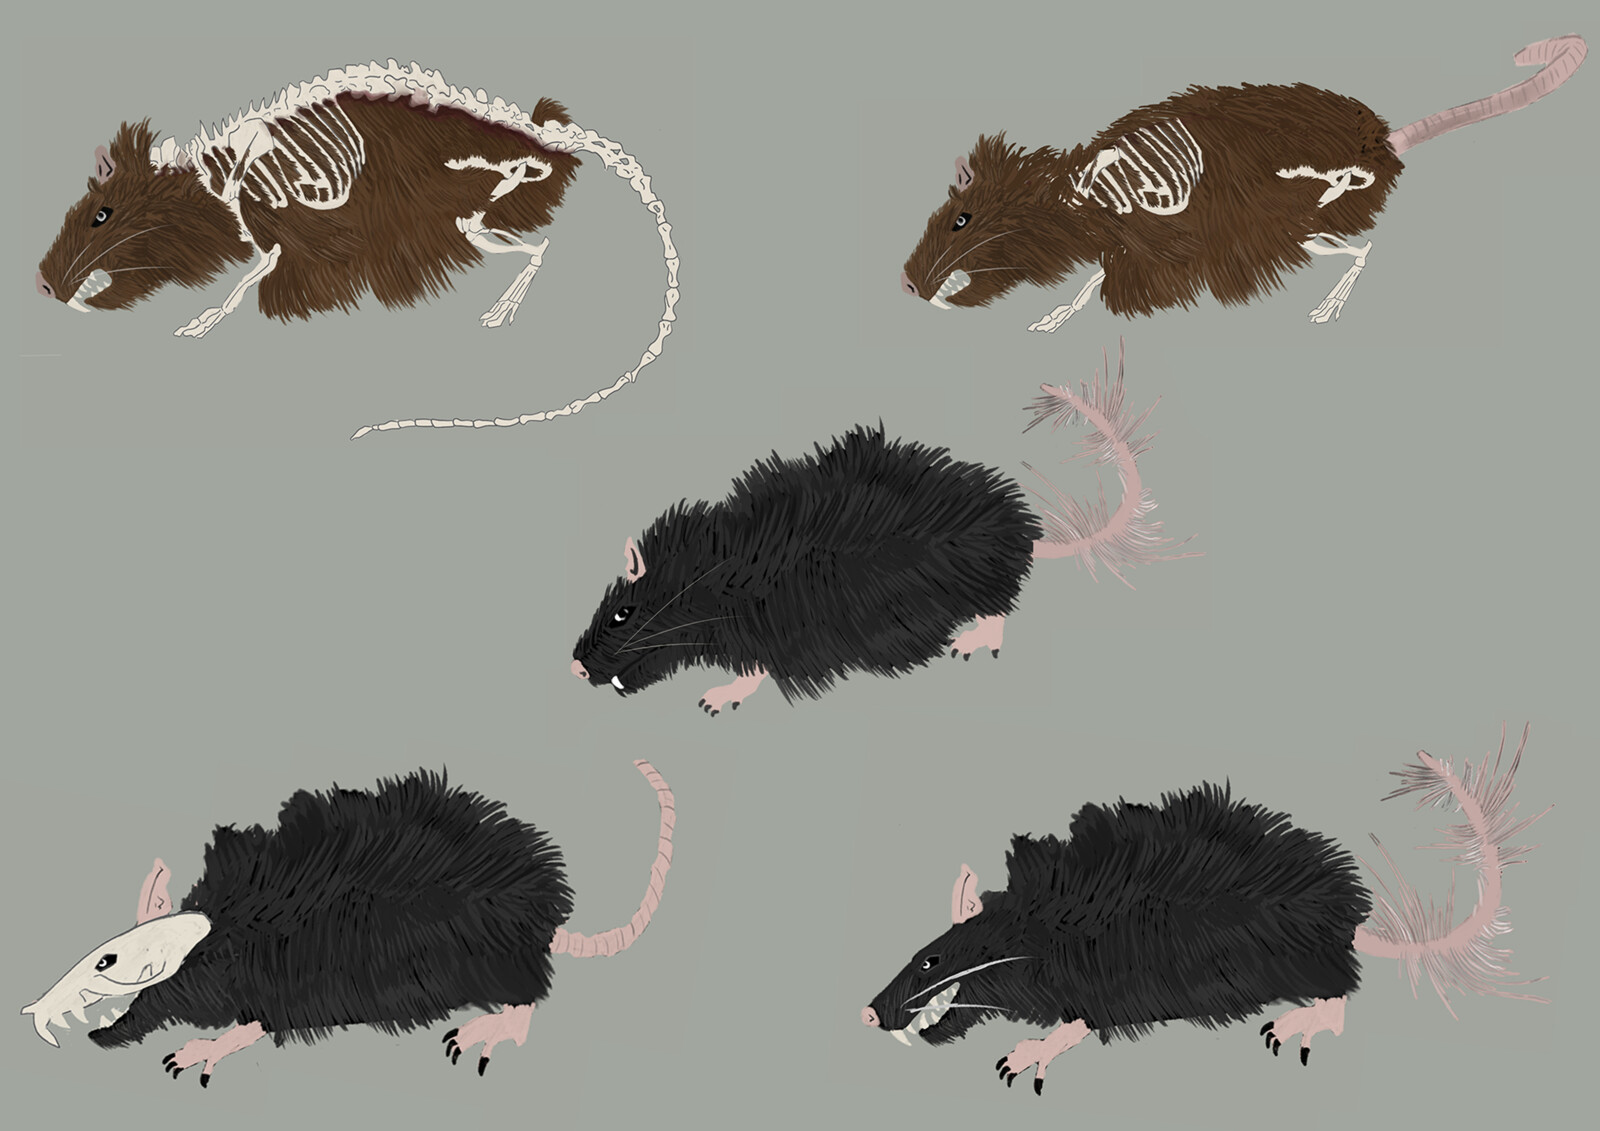 Rat concepts